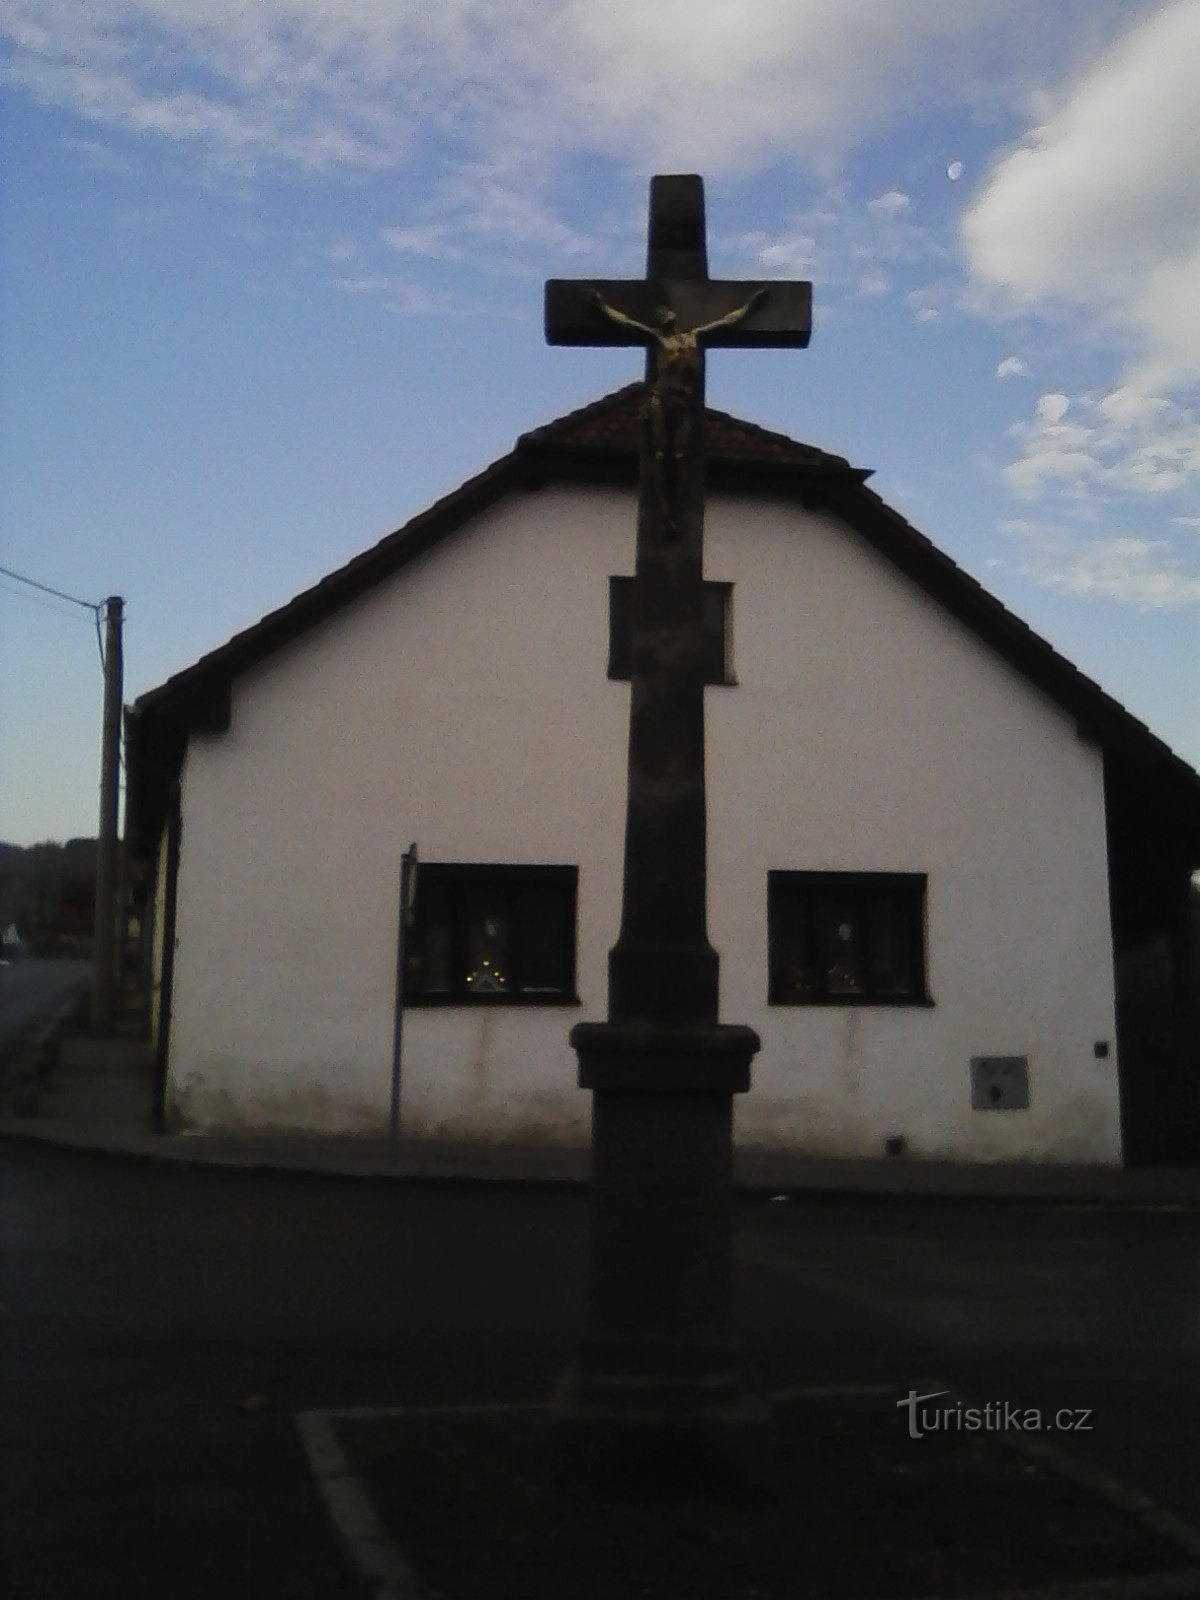 1. Cruce la capătul șeii.